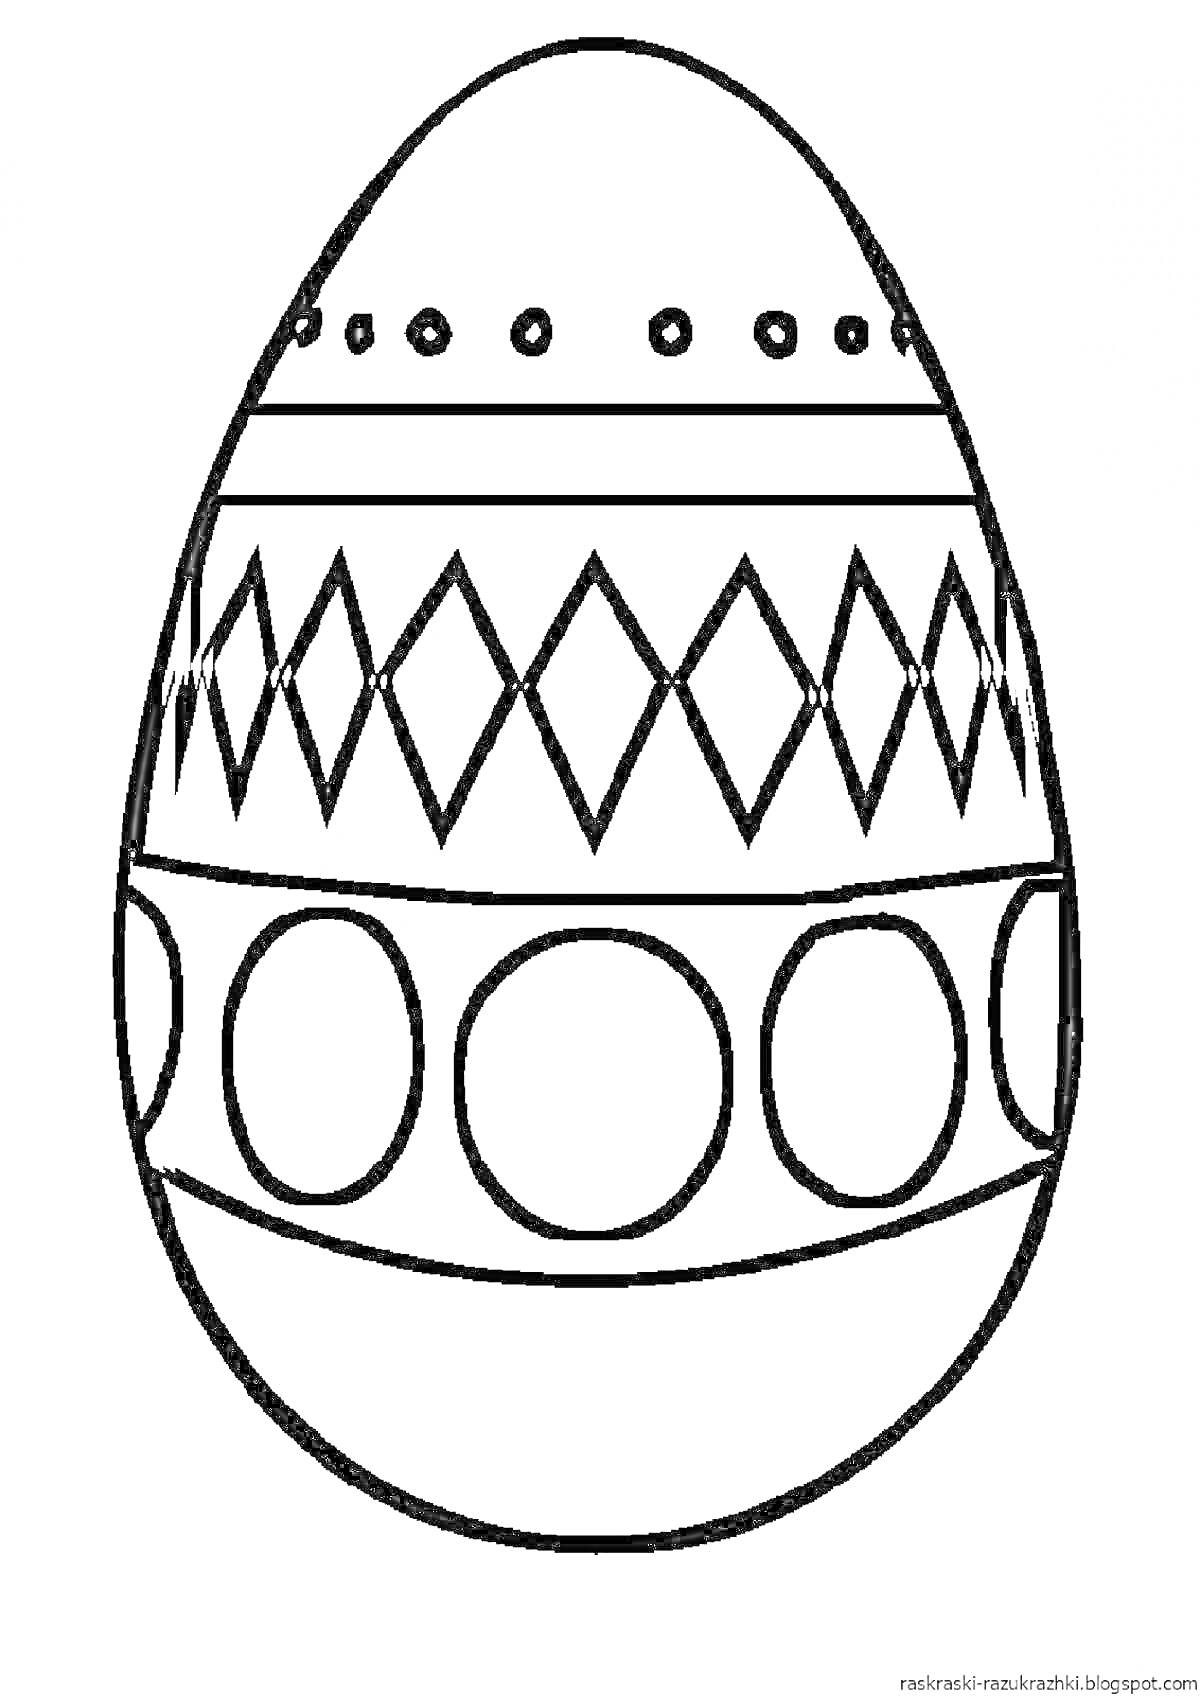 Раскраска Раскраска яйца с узорами из кружков, ромбов и линий